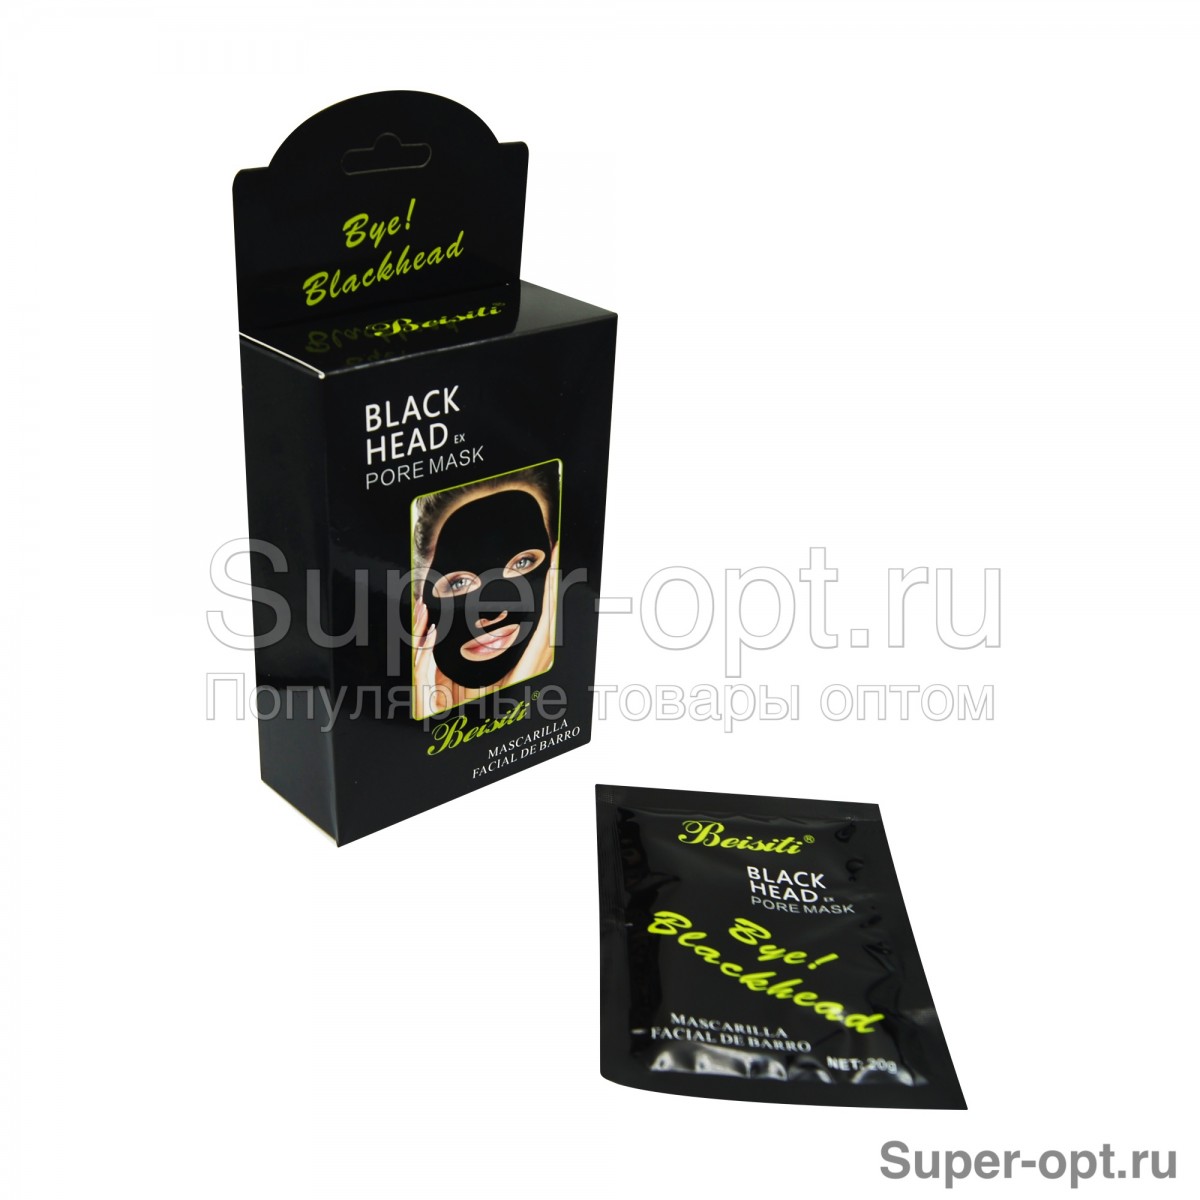 Очищающая маска для лица Black Head Pore Mask